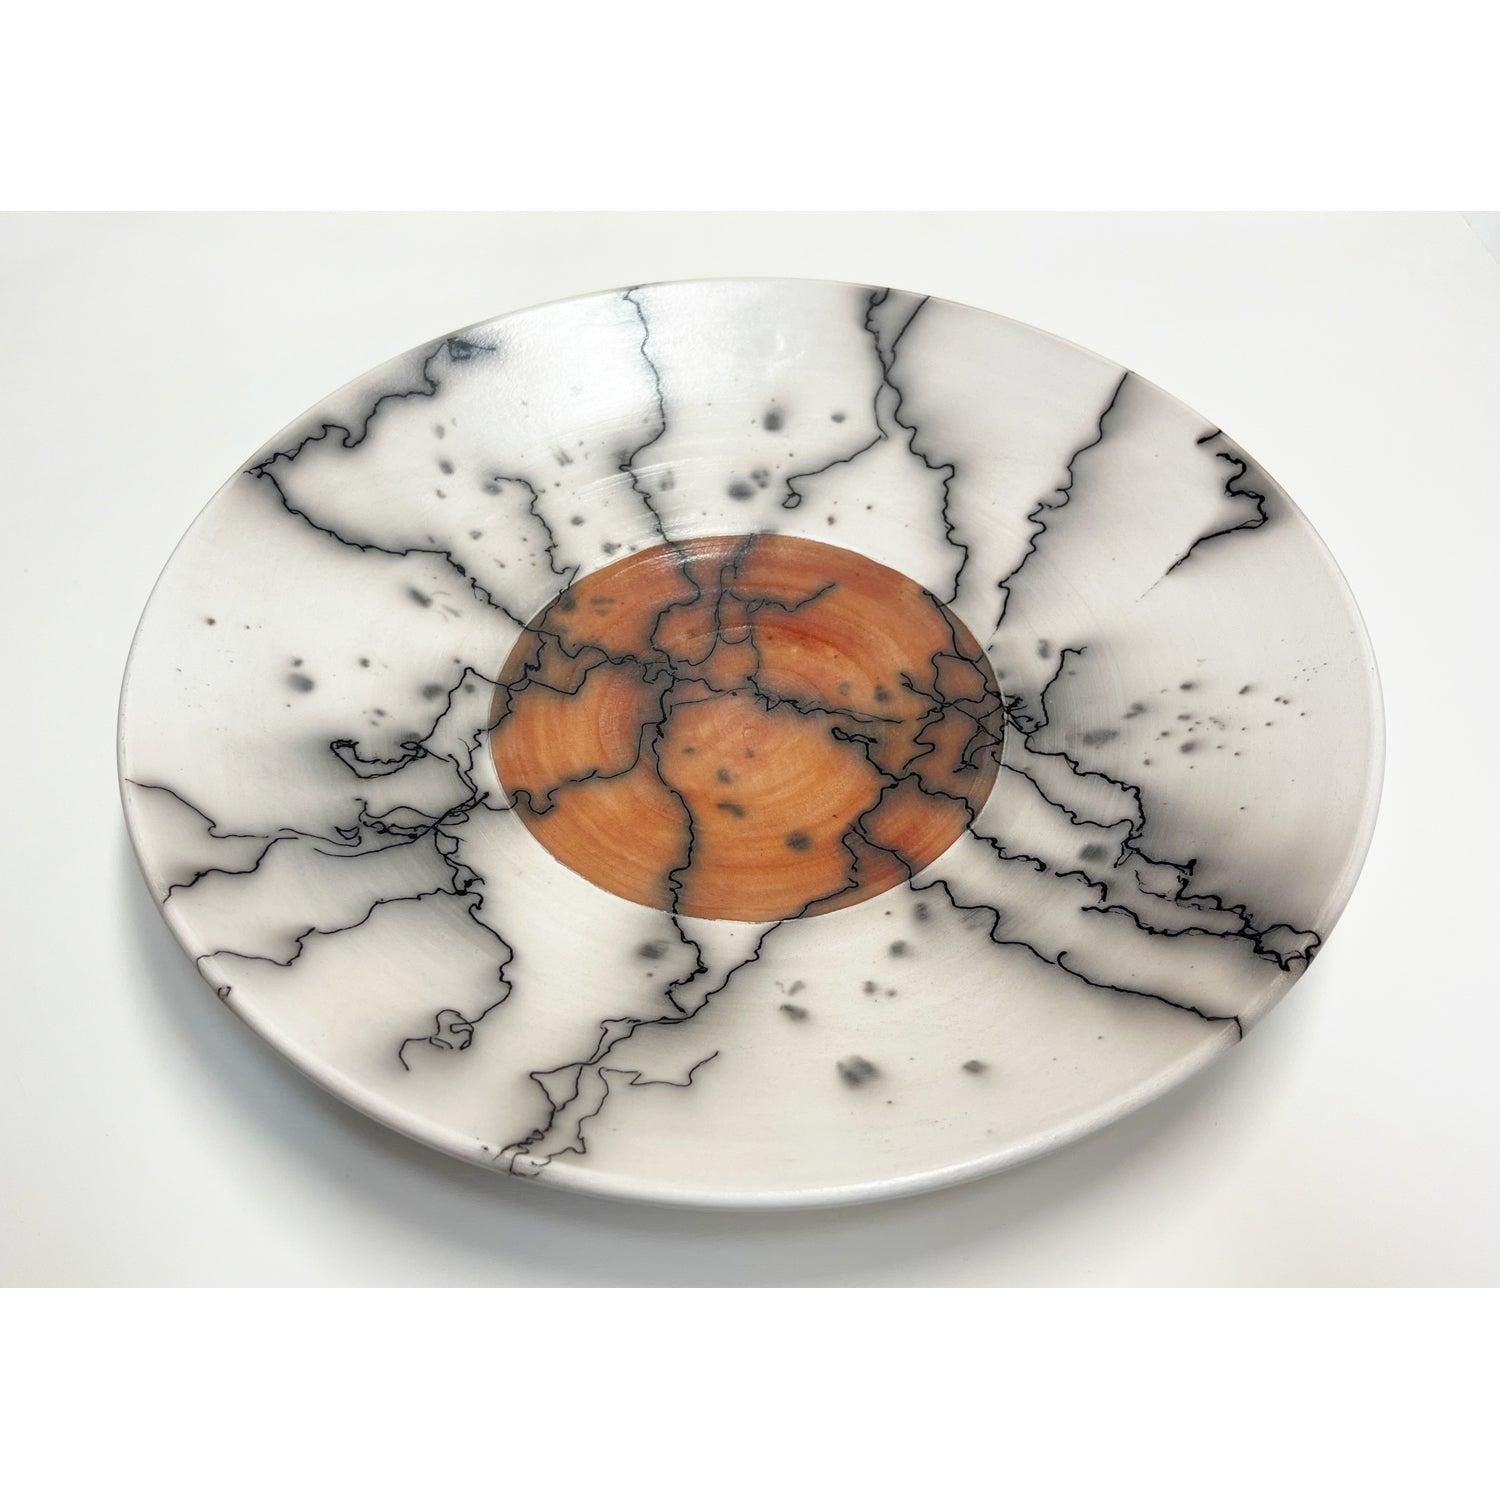 Shu-Chen Cheng - Medium Horse Hair Plate, 13" diameter